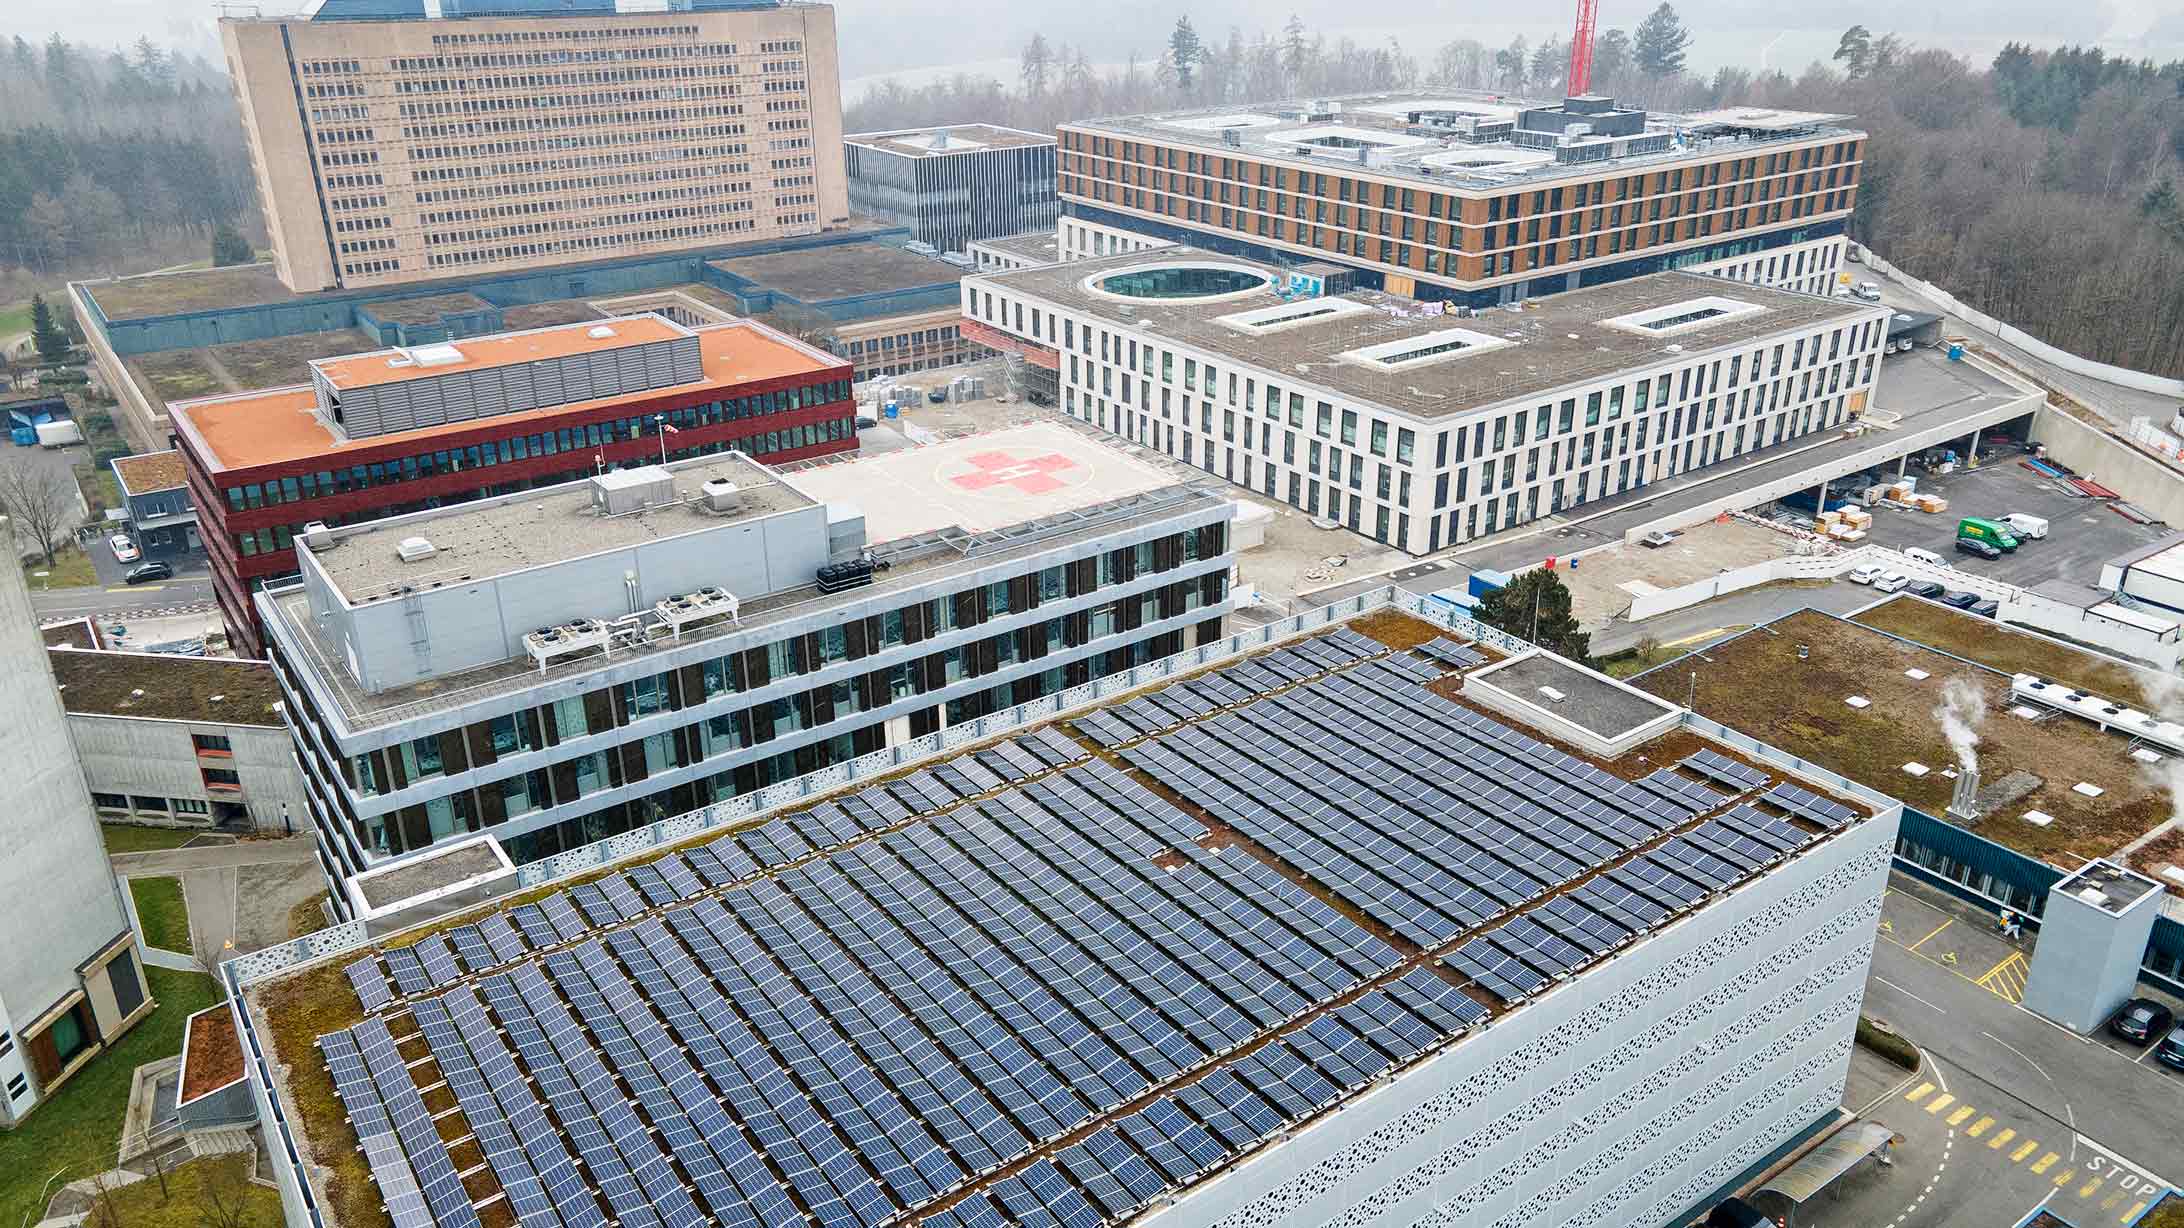 Drohnenbild Gesundheits-Campus KSB mit KSB-Neubau und Photovoltaikanlage auf Parkhaus.